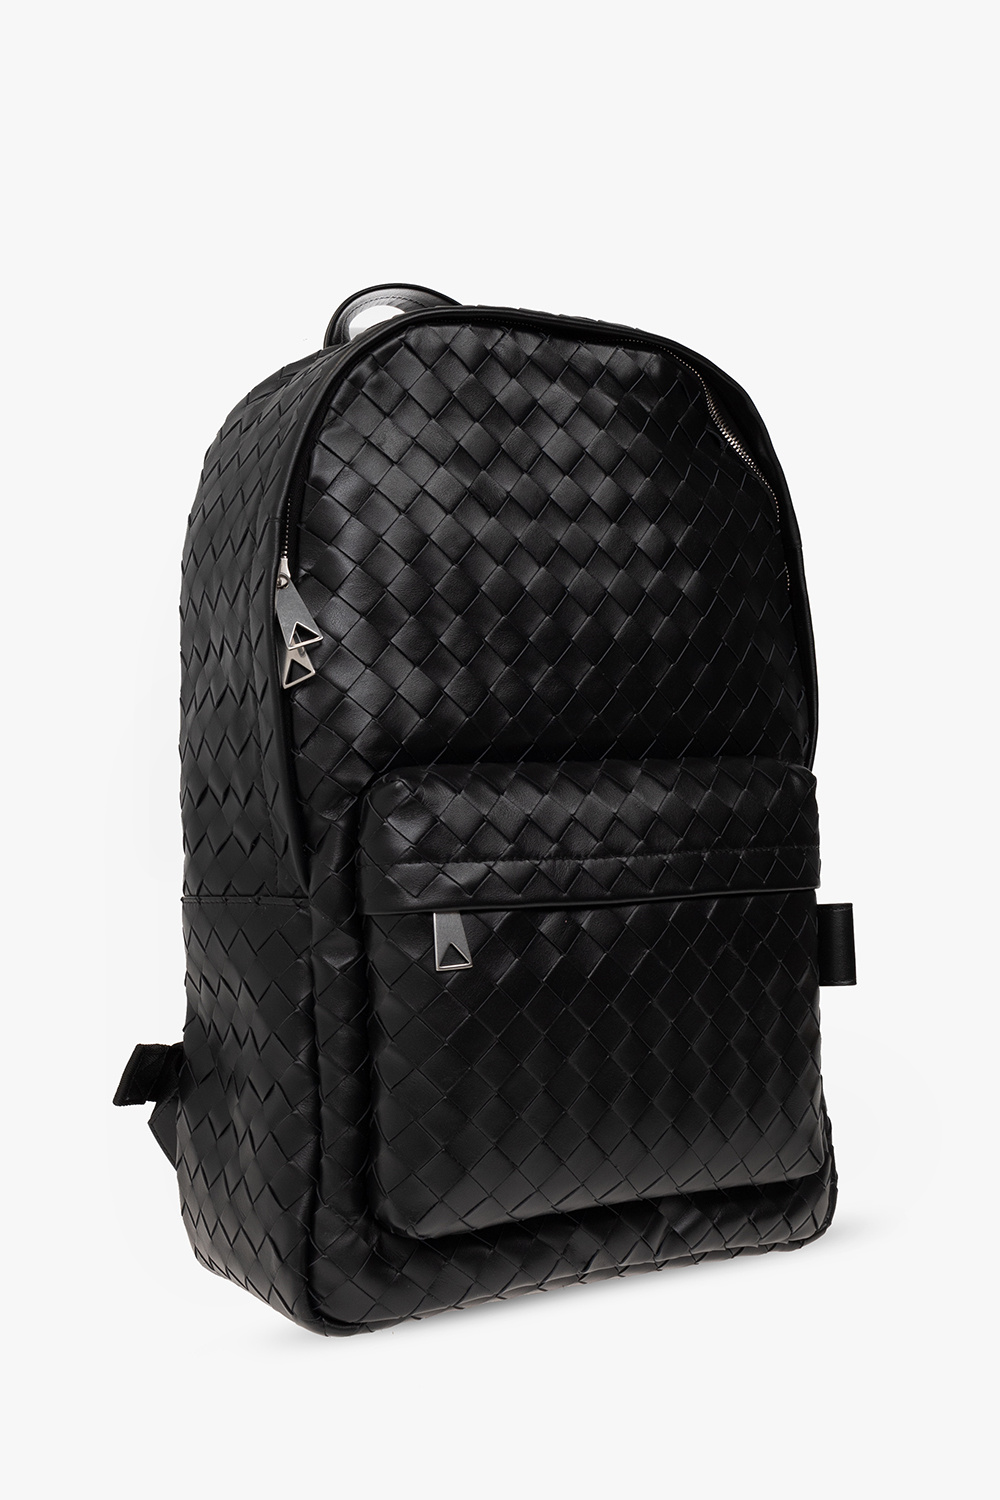 Bottega Veneta Medium Leather Classic Intrecciato Backpack